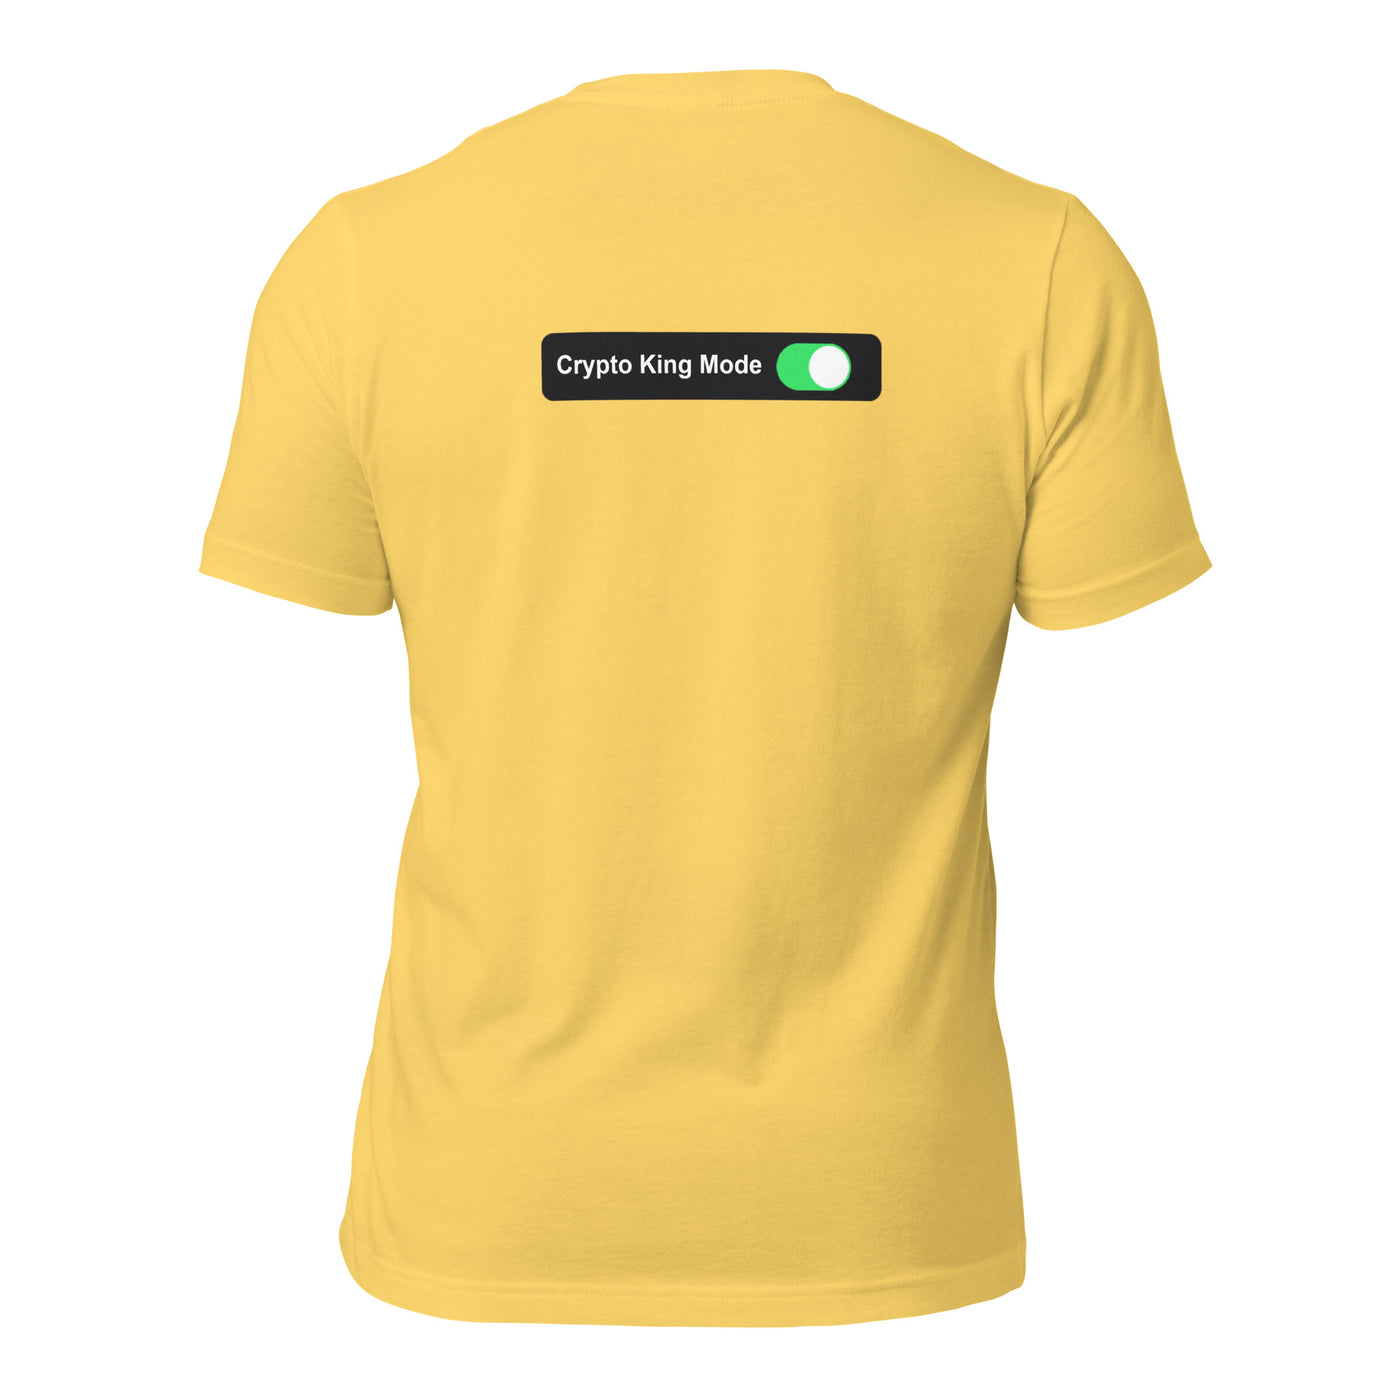 Crypto King Mode On - Unisex t-shirt (back print)